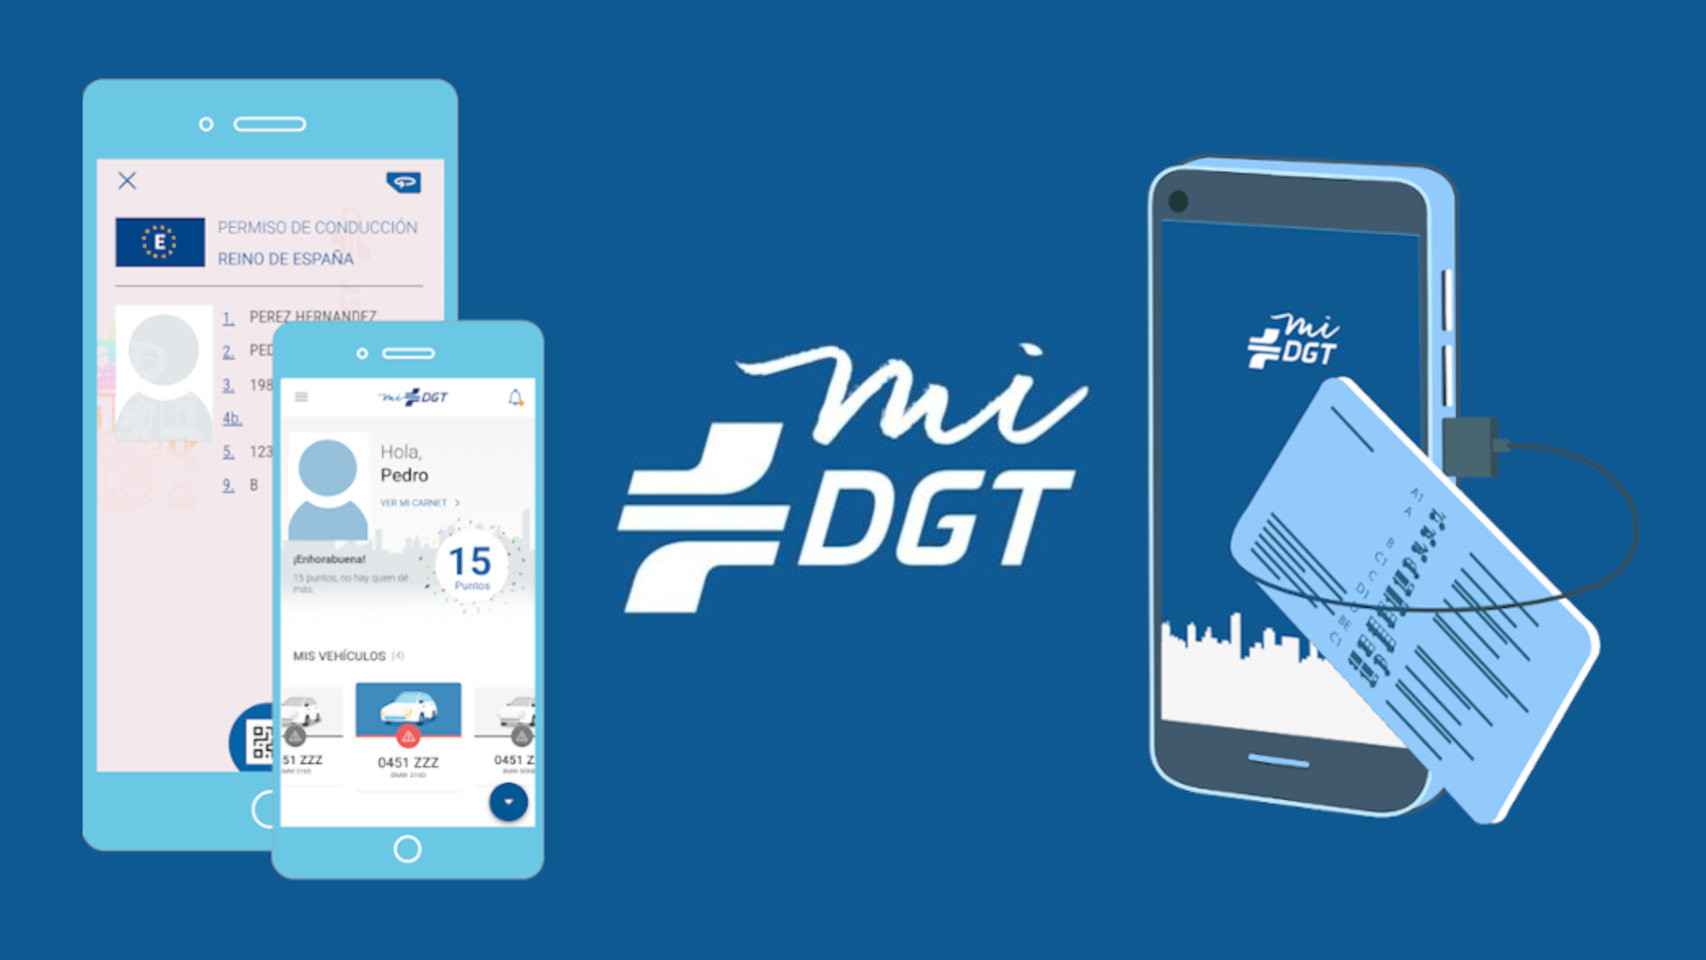 La app oficial de la DGT, miDGT